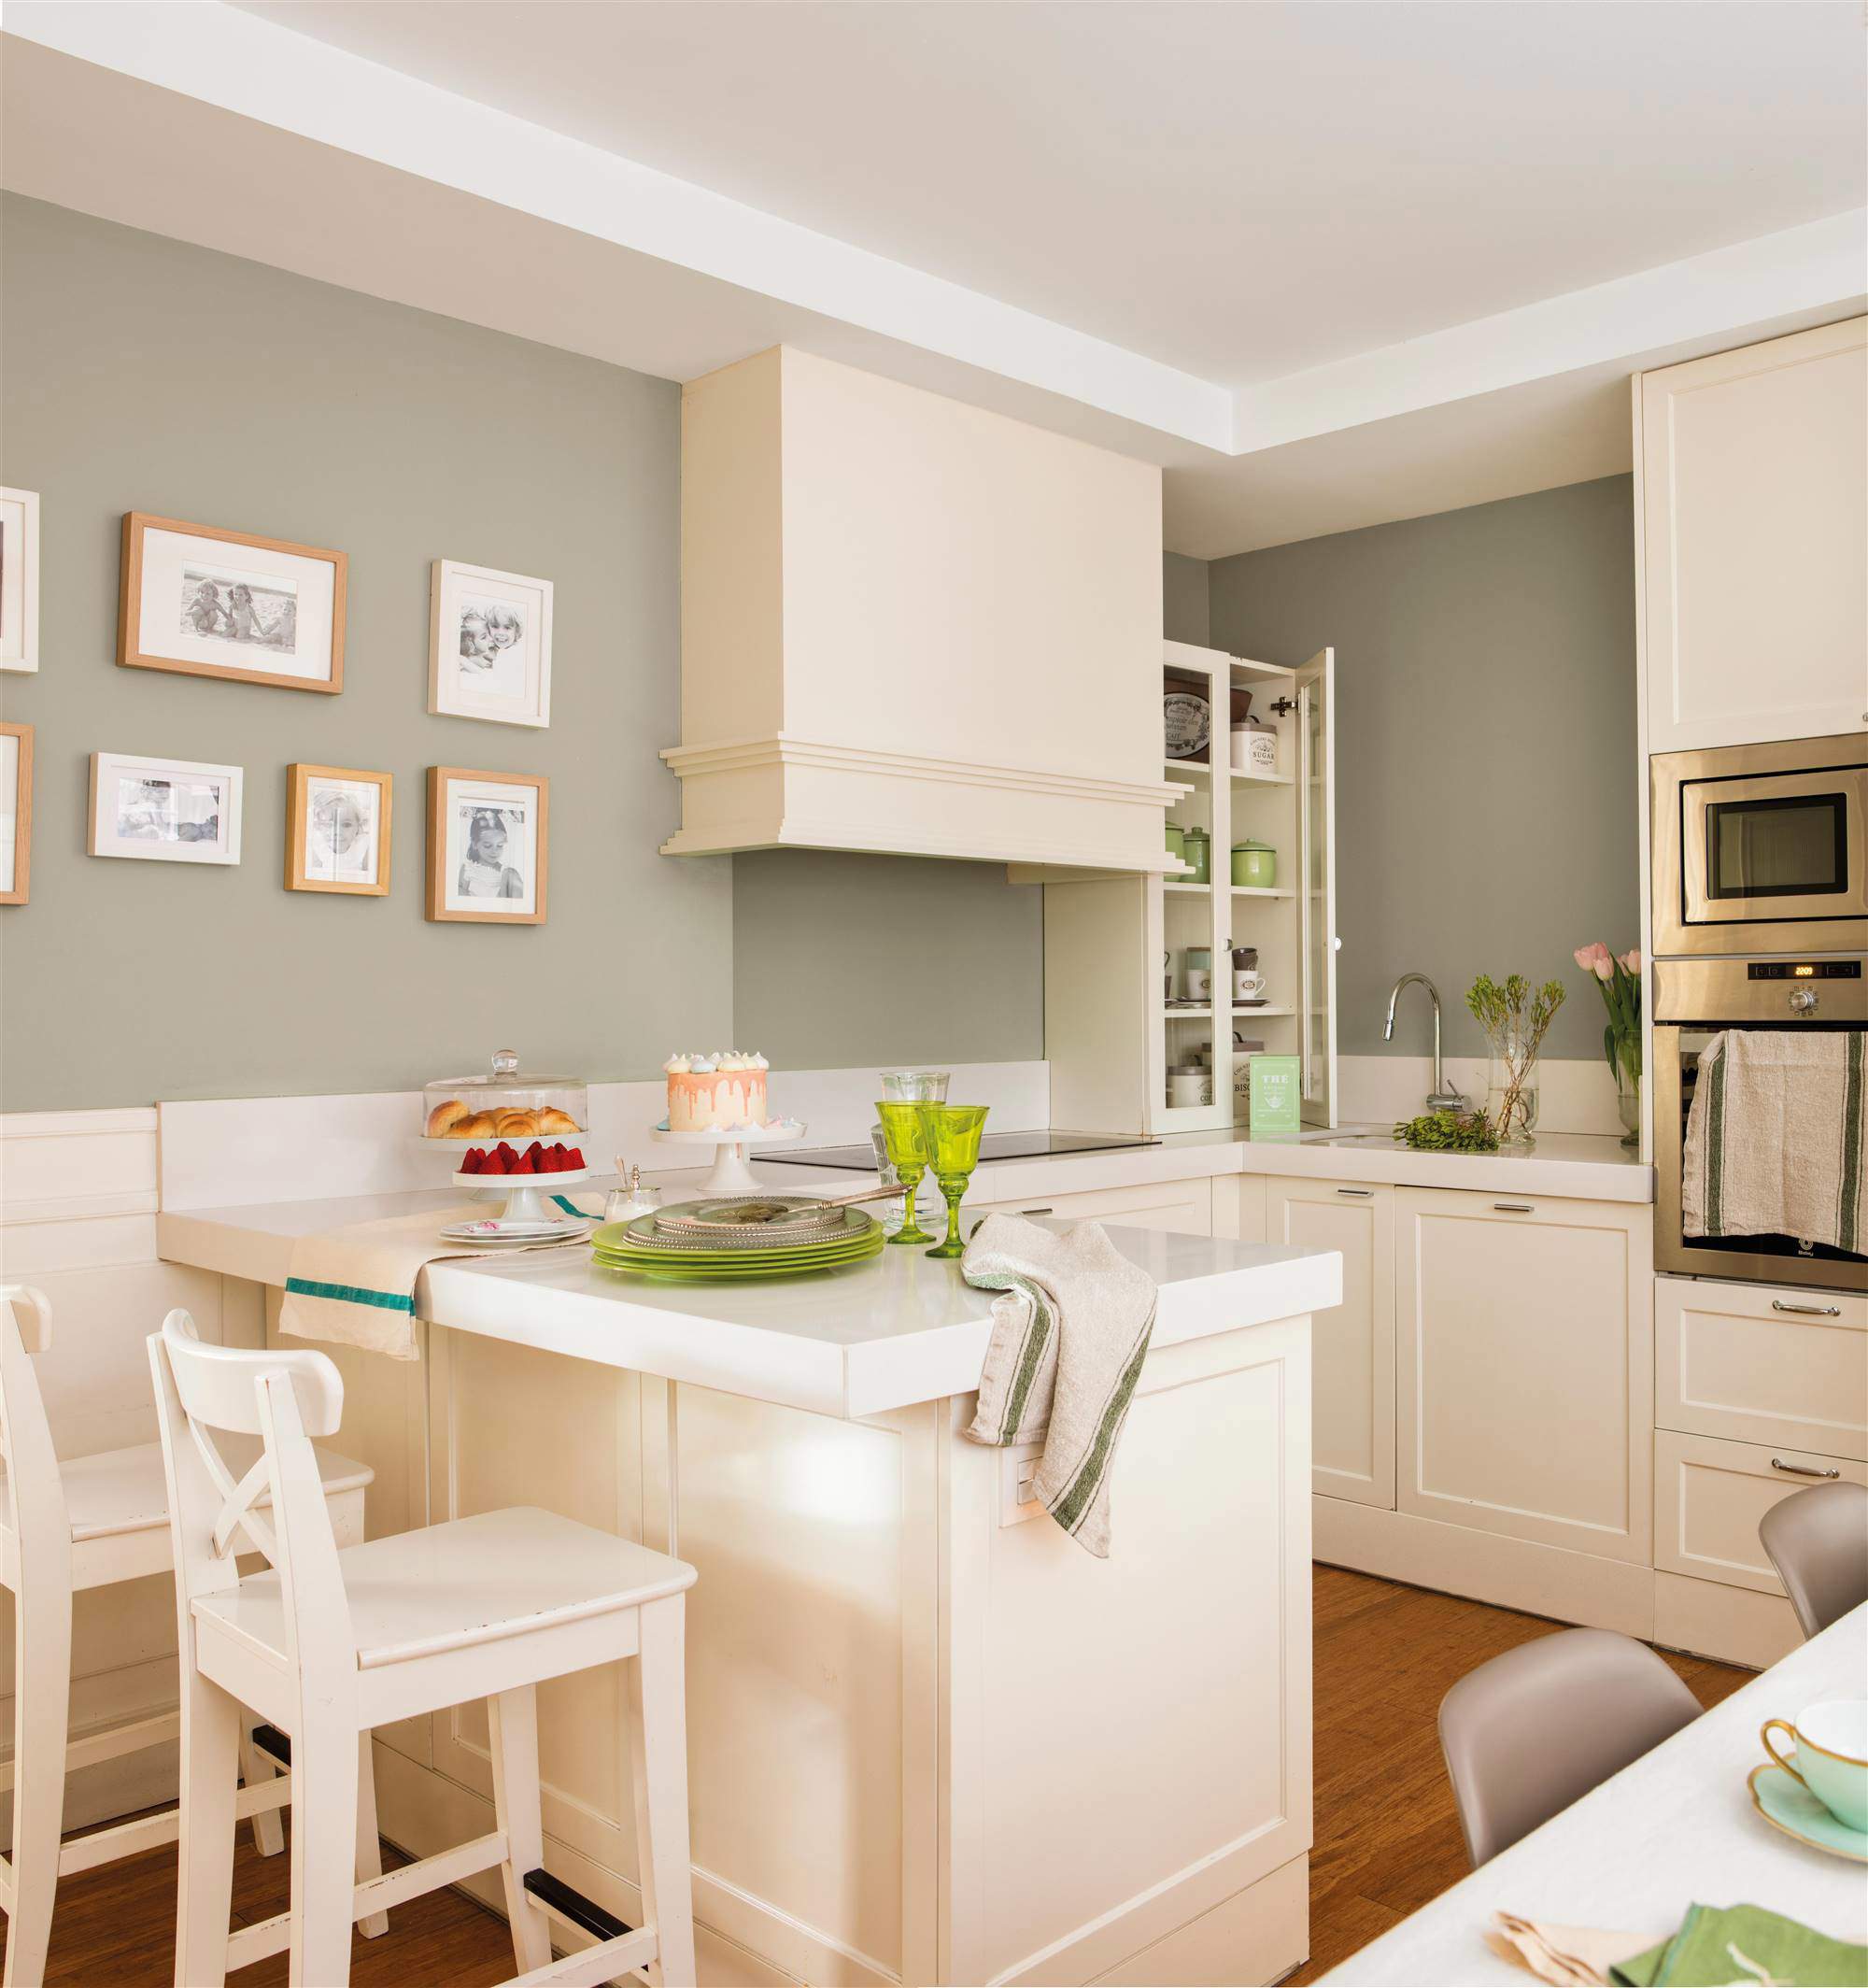 Cocina blanca con península a modo de barra y comedor, pared pintada en verde grisáceo, campana y composición de fotos familiares.